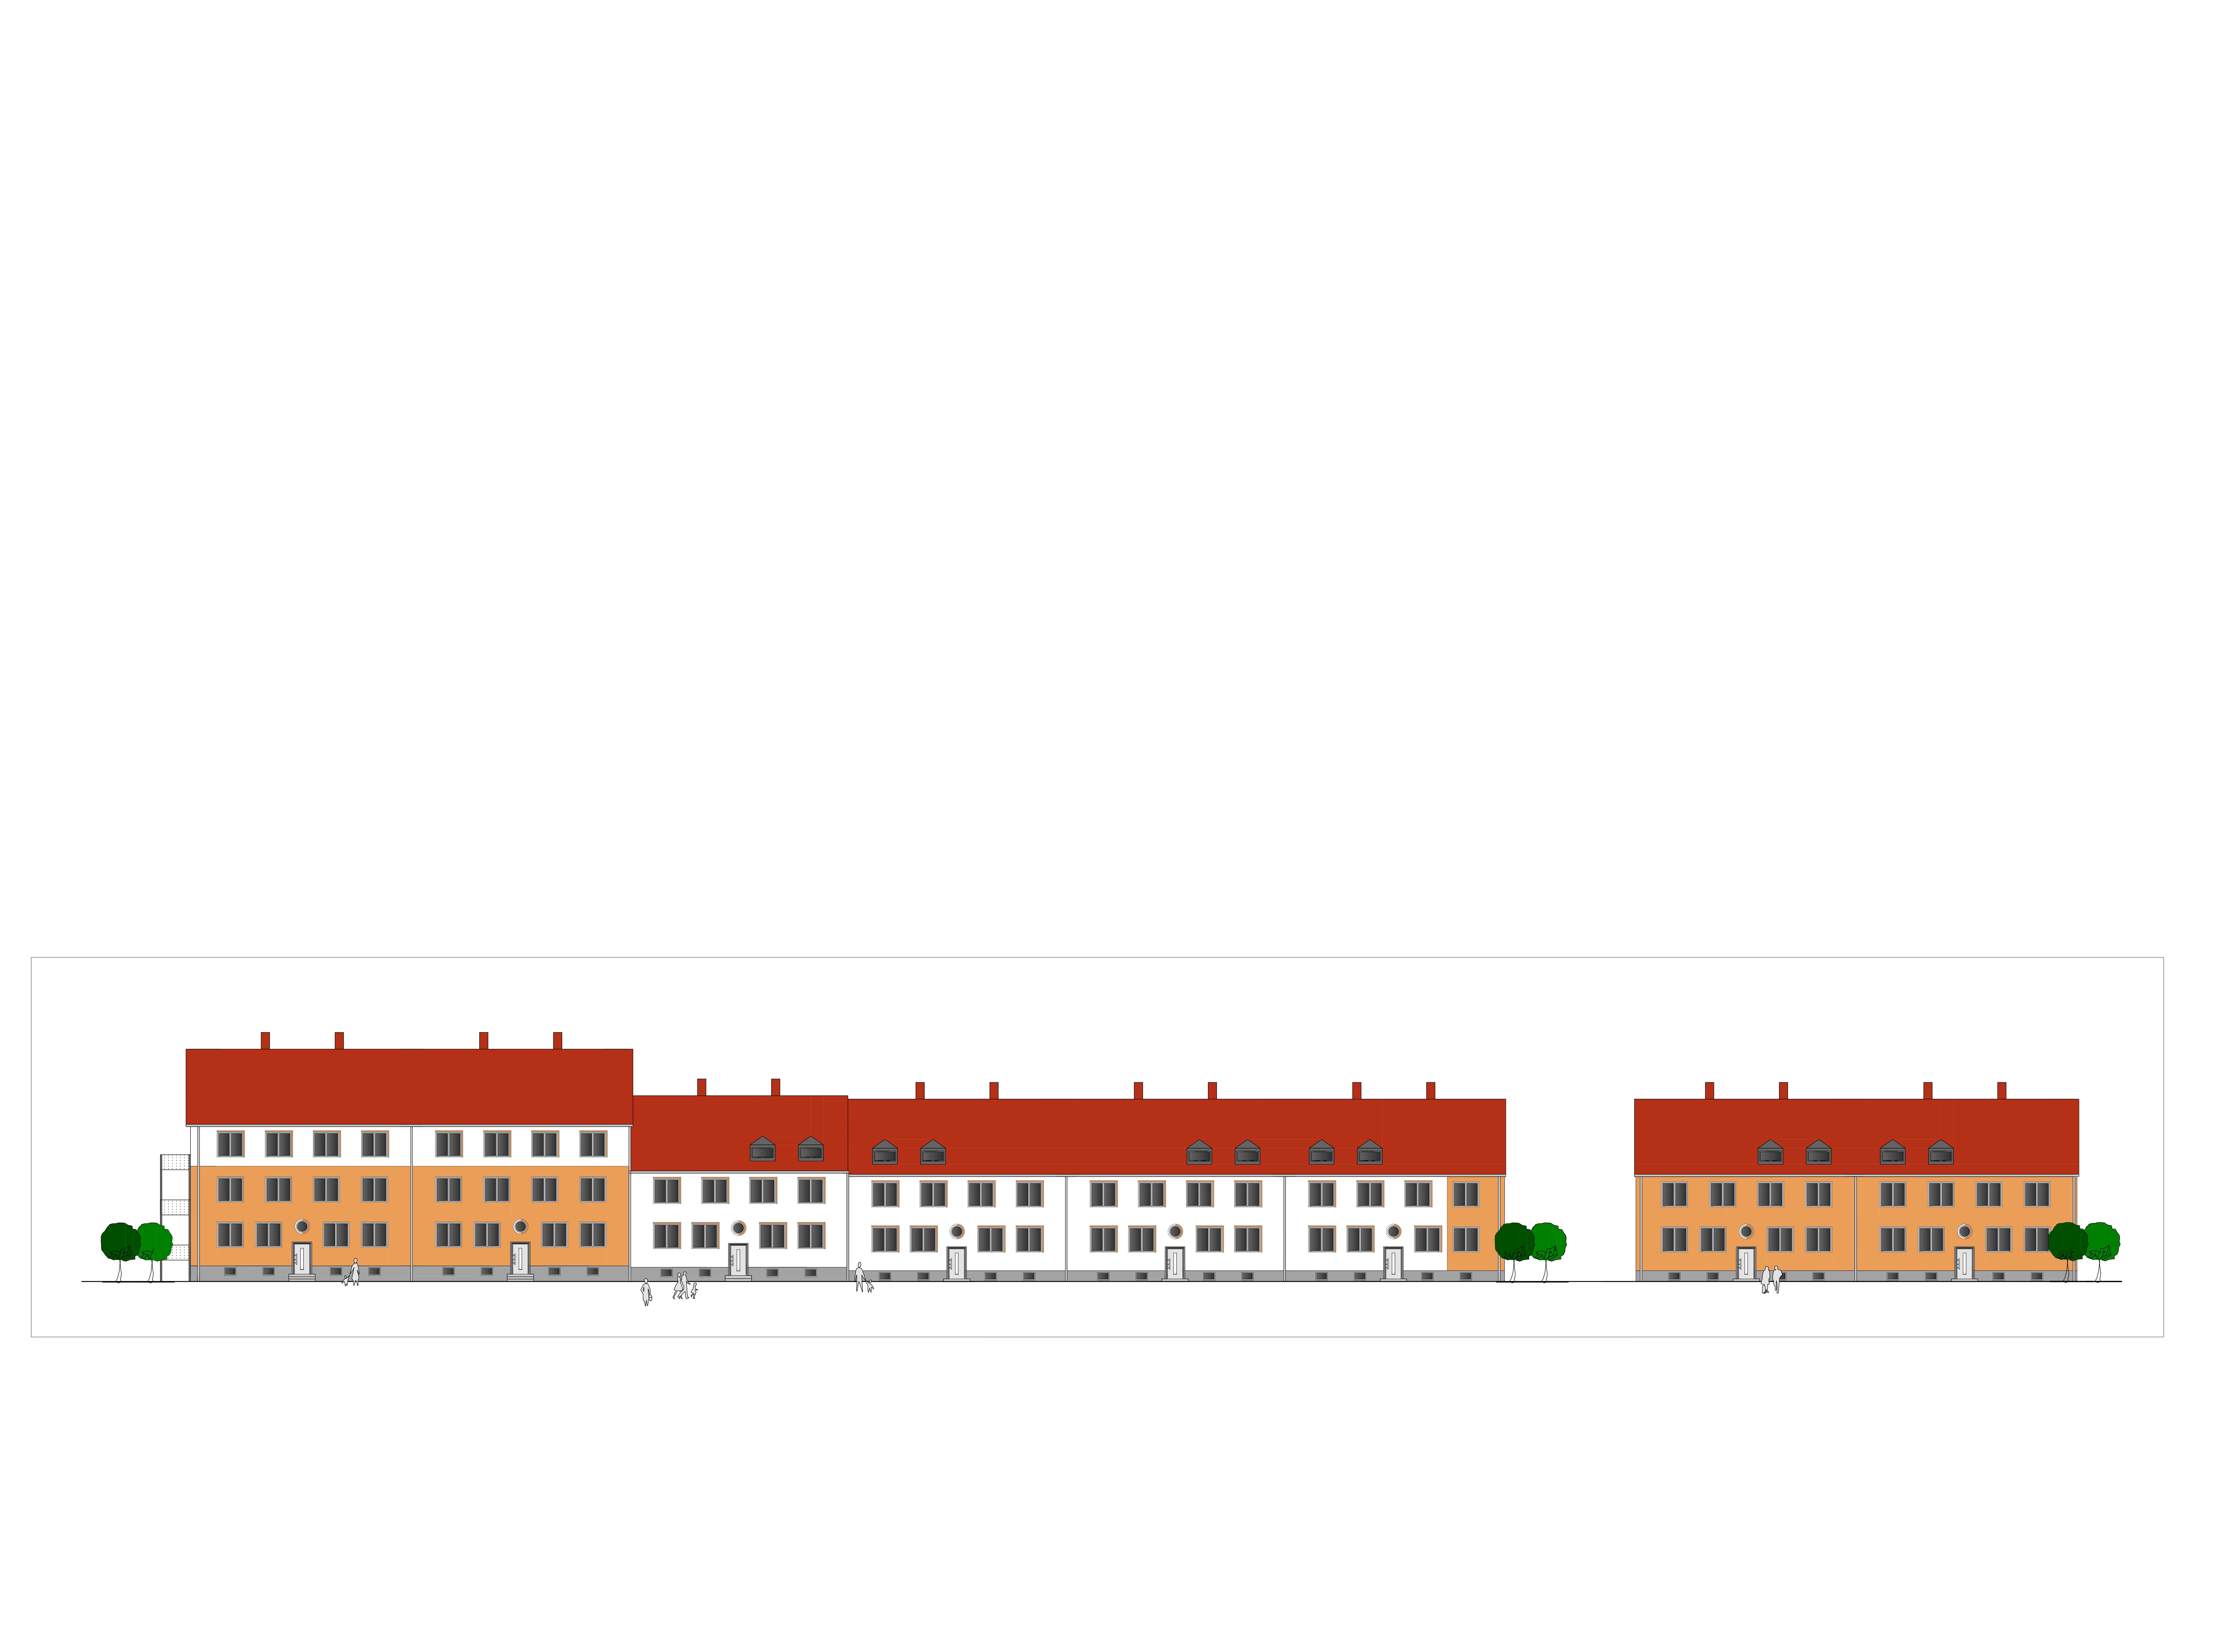 Plan mit oranger Farbgestaltung eines Evinger Häuserzuges